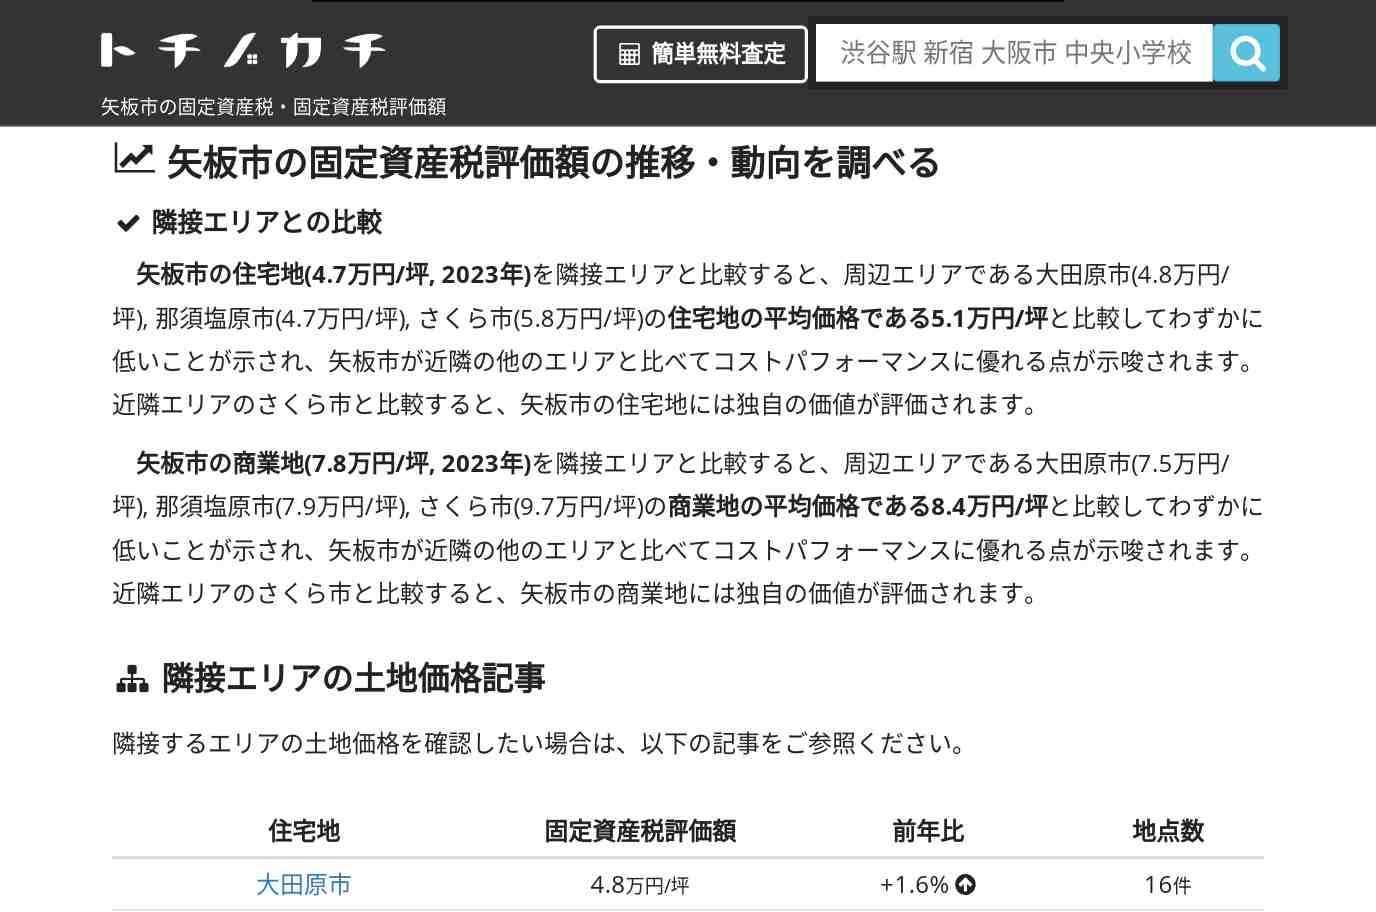 安沢小学校(栃木県 矢板市)周辺の固定資産税・固定資産税評価額 | トチノカチ